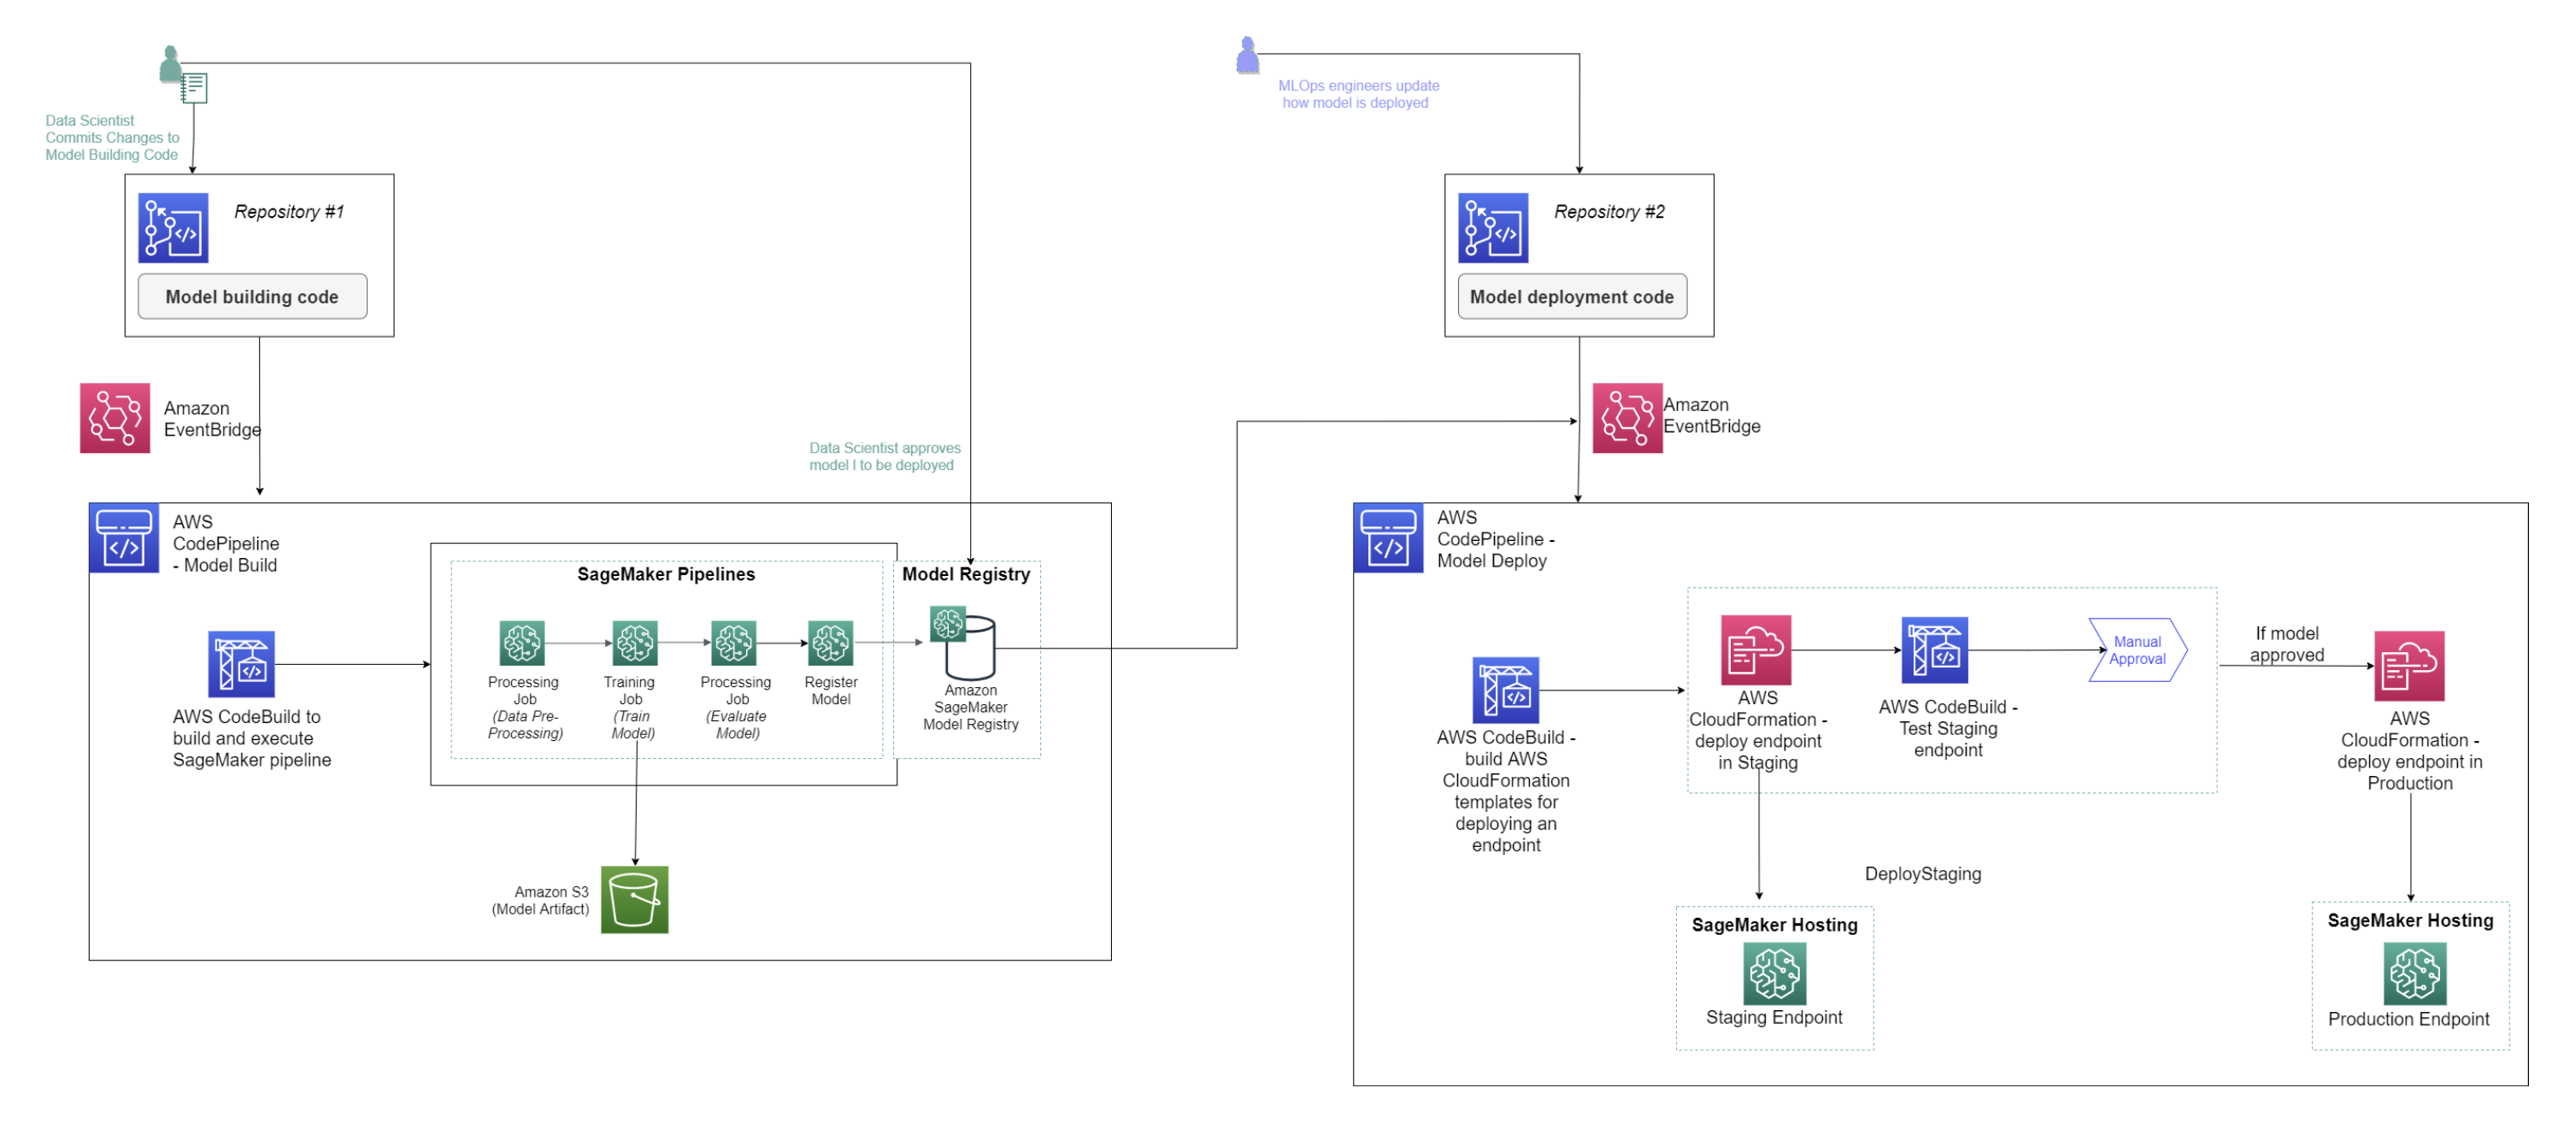 Un diagramma del flusso di lavoro ML per una pipeline che include le fasi di formazione e implementazione del modello.